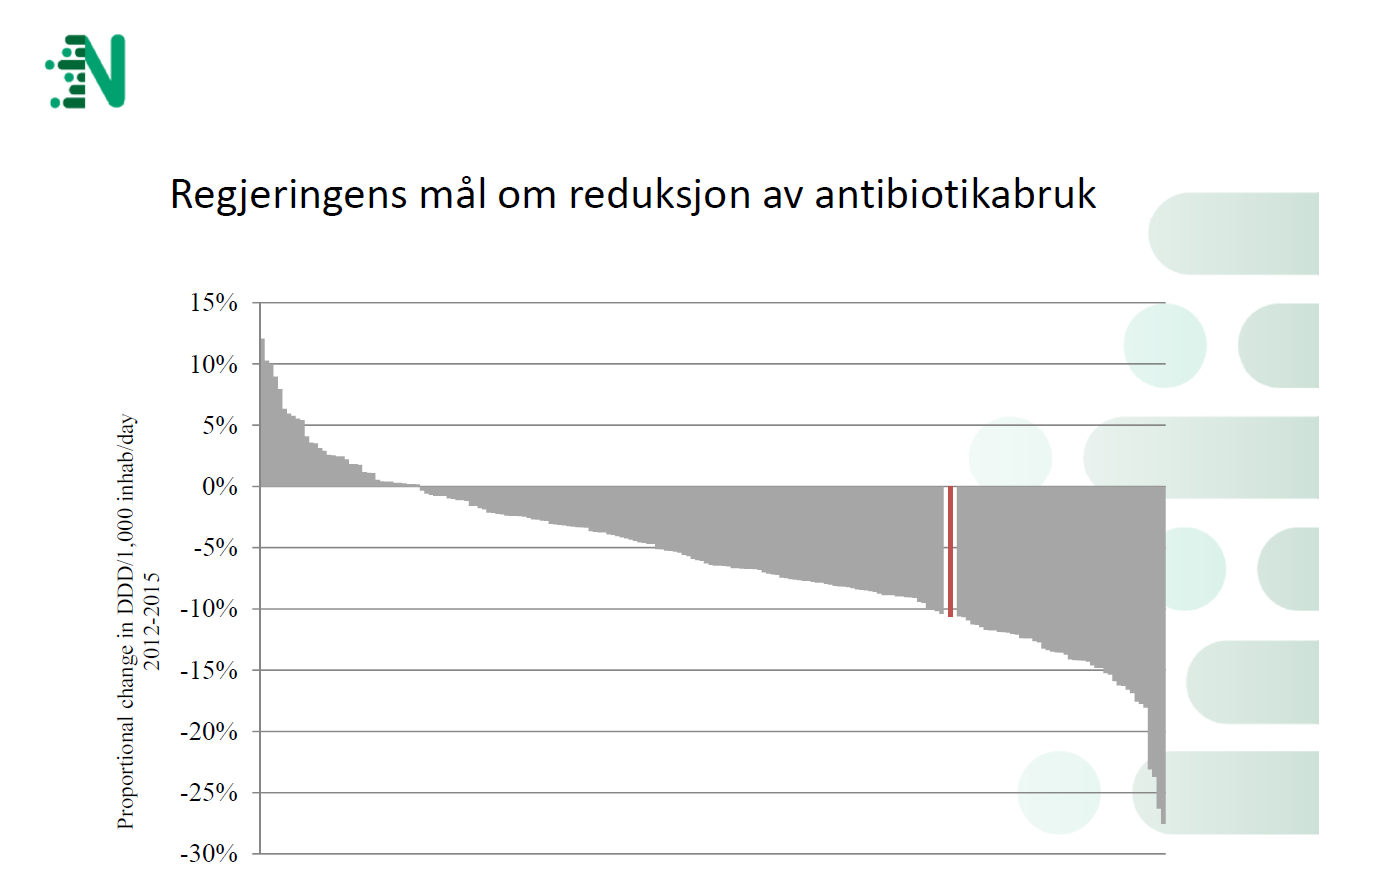 Endring i antibiotikabruk per kommune